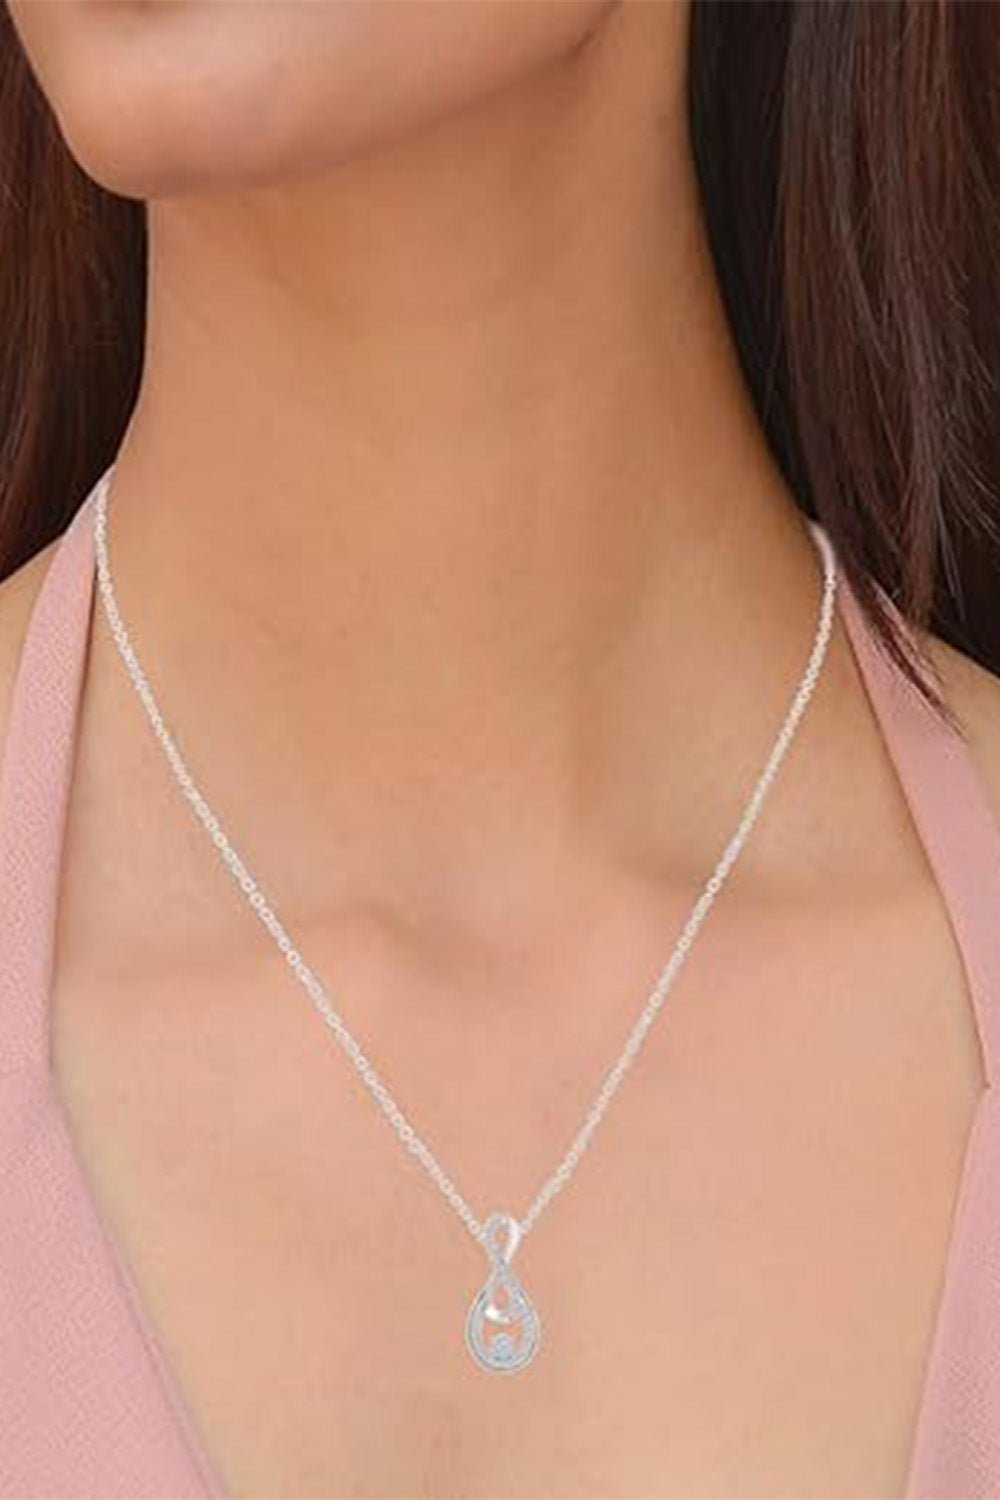 Yaathi Double Infinity Pendant Necklace, Pendants Online 